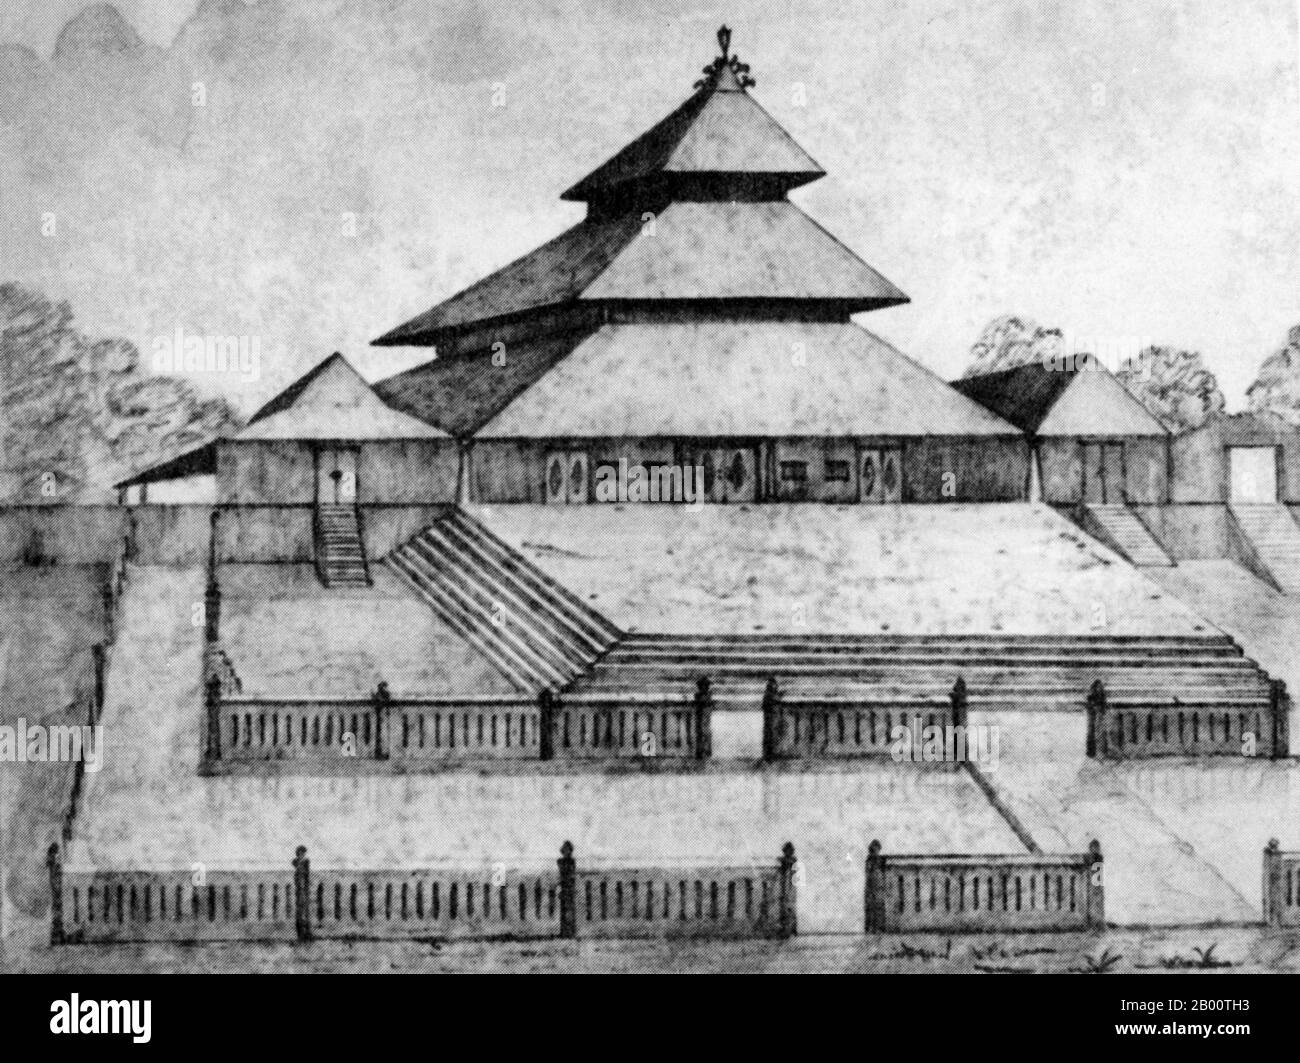 Indonesien: Eine Bleistiftskizze aus dem Jahr 1847 der Surakarta Moschee in Zentral-Java. Die in den 1760er Jahren erbaute pyramidenförmige große Moschee von Surakarta gilt als eines der kunstvollsten und eindrucksvollsten Beispiele javanesischer Architektur. Stockfoto